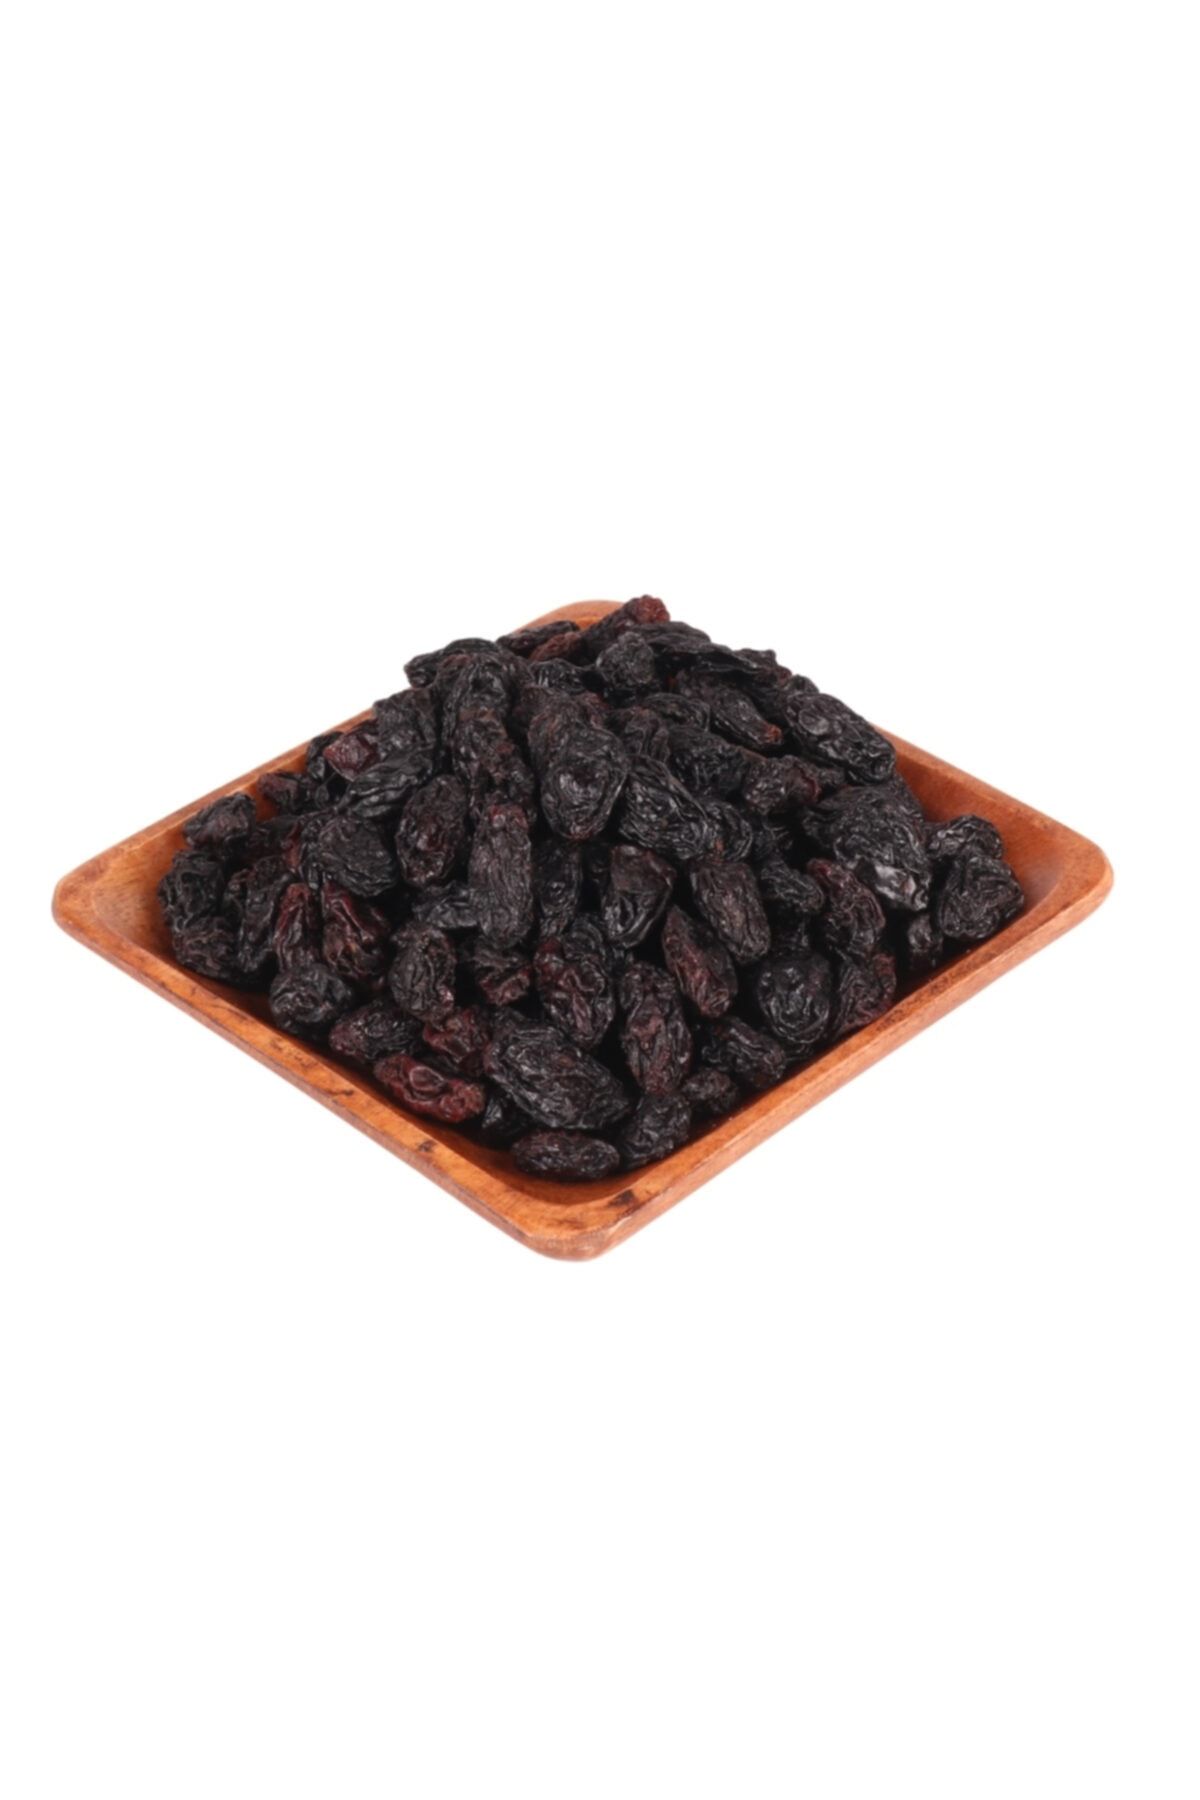 Antik Kuruyemiş Siyah Üzüm Çekirdekli 500 gr